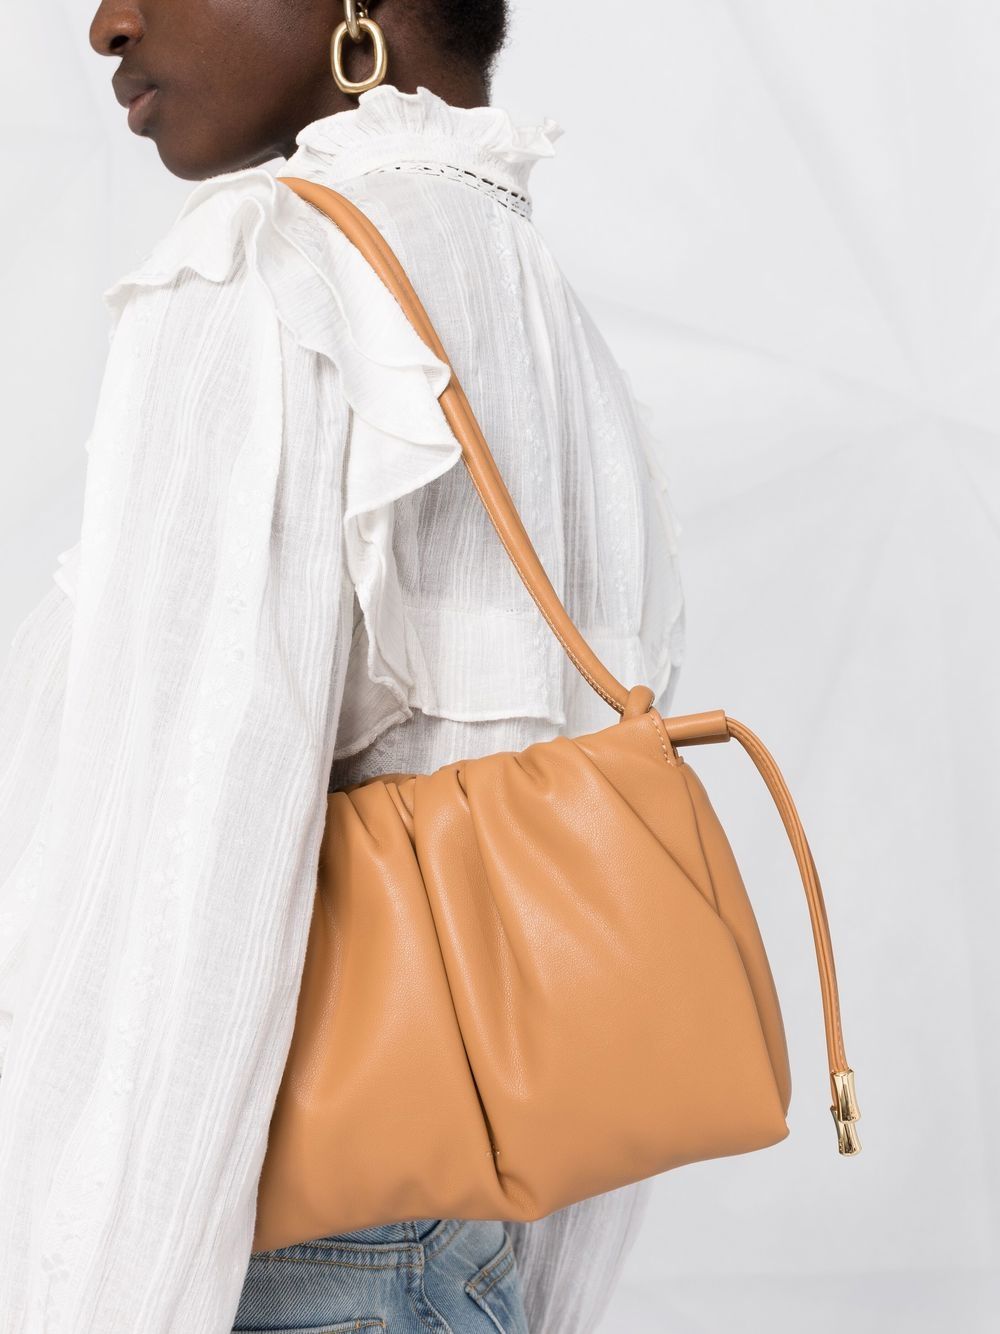 Hermès 2009 pre-owned Sac De Pansage Shoulder Bag - Farfetch